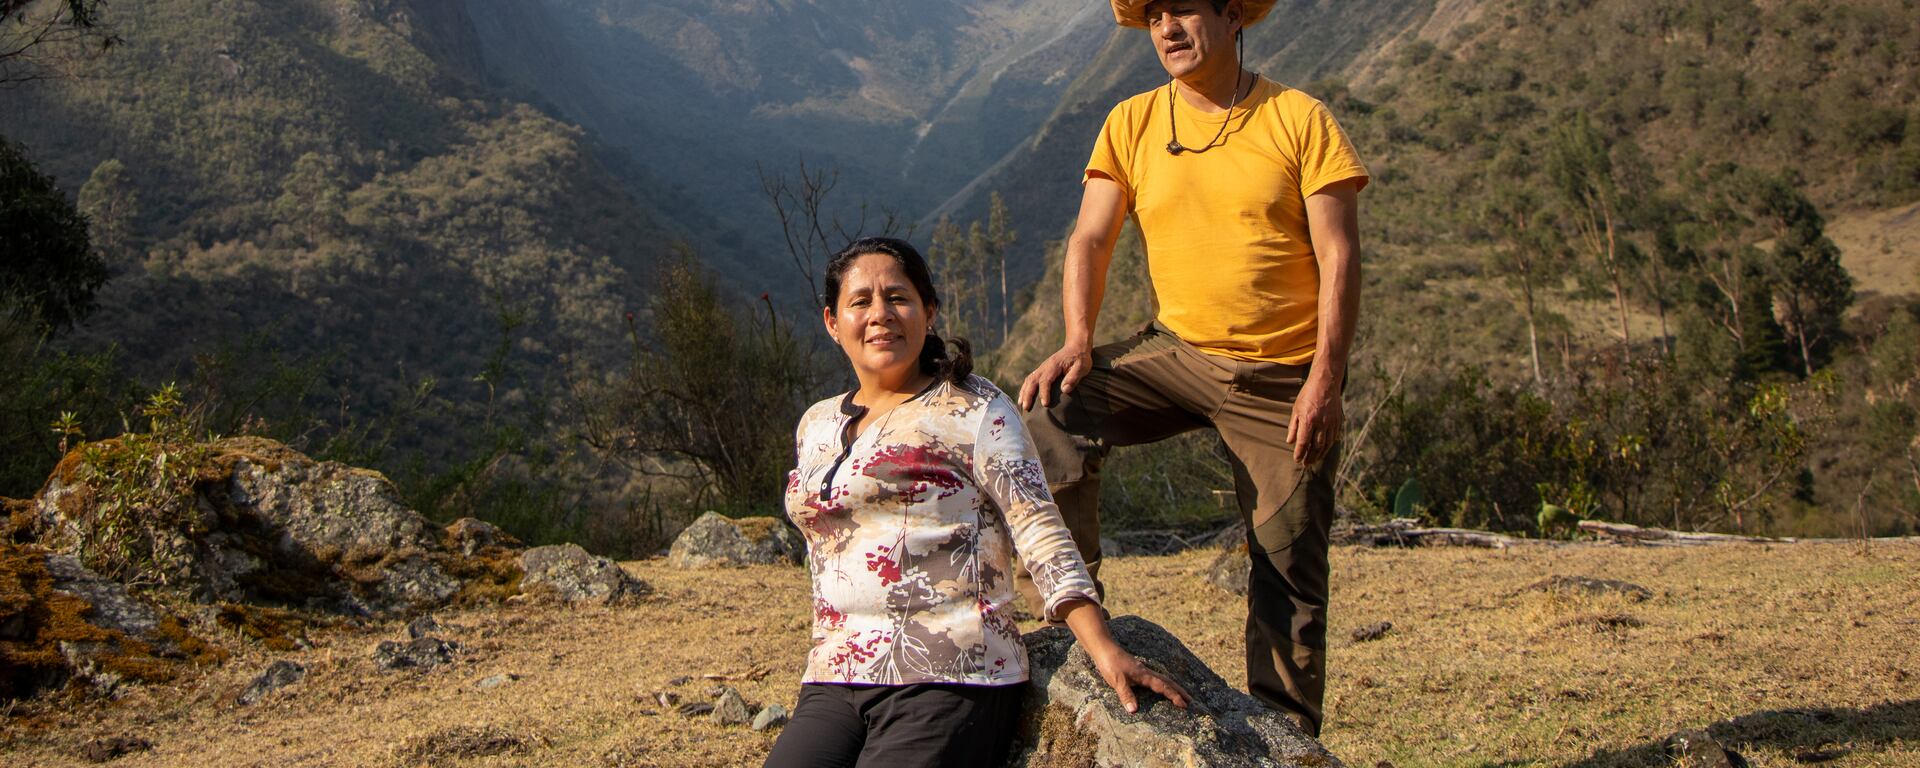 La familia que lucha por proteger uno de los últimos bosques del Valle Sagrado en Cusco: ¿quiénes son los guardianes del Santuario de la Verónica?